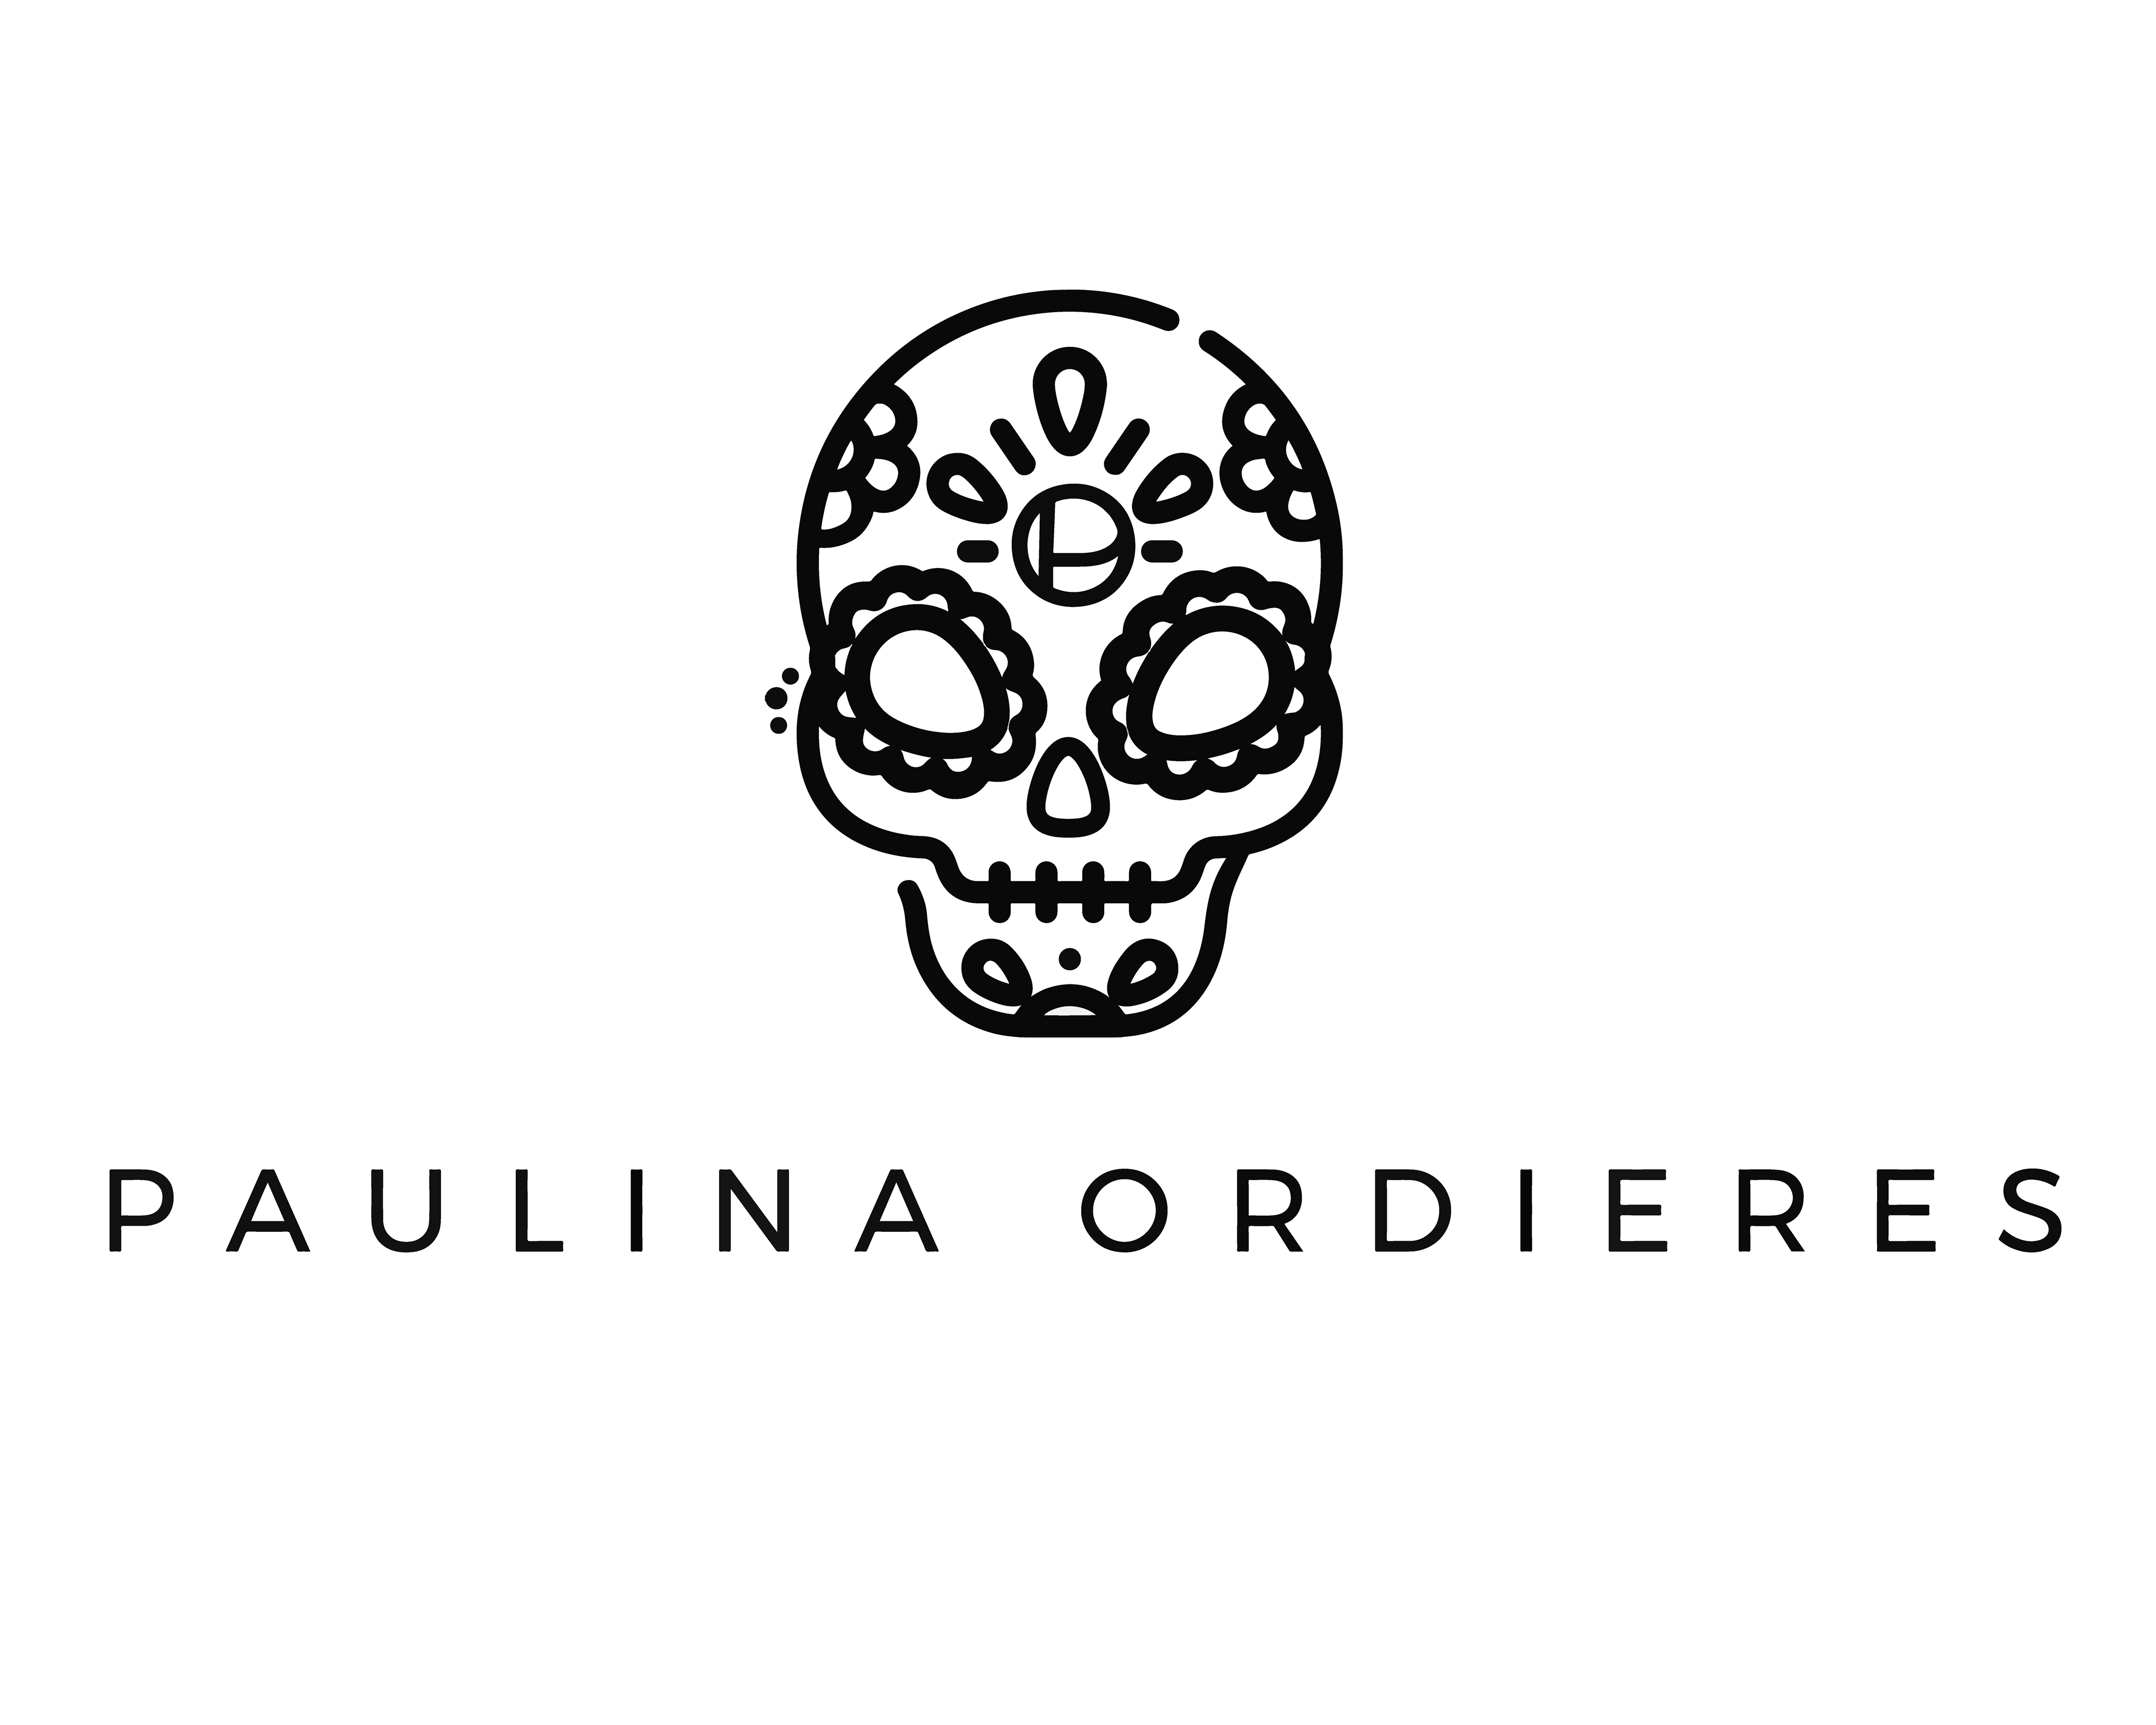 Paulina Ordieres Vega